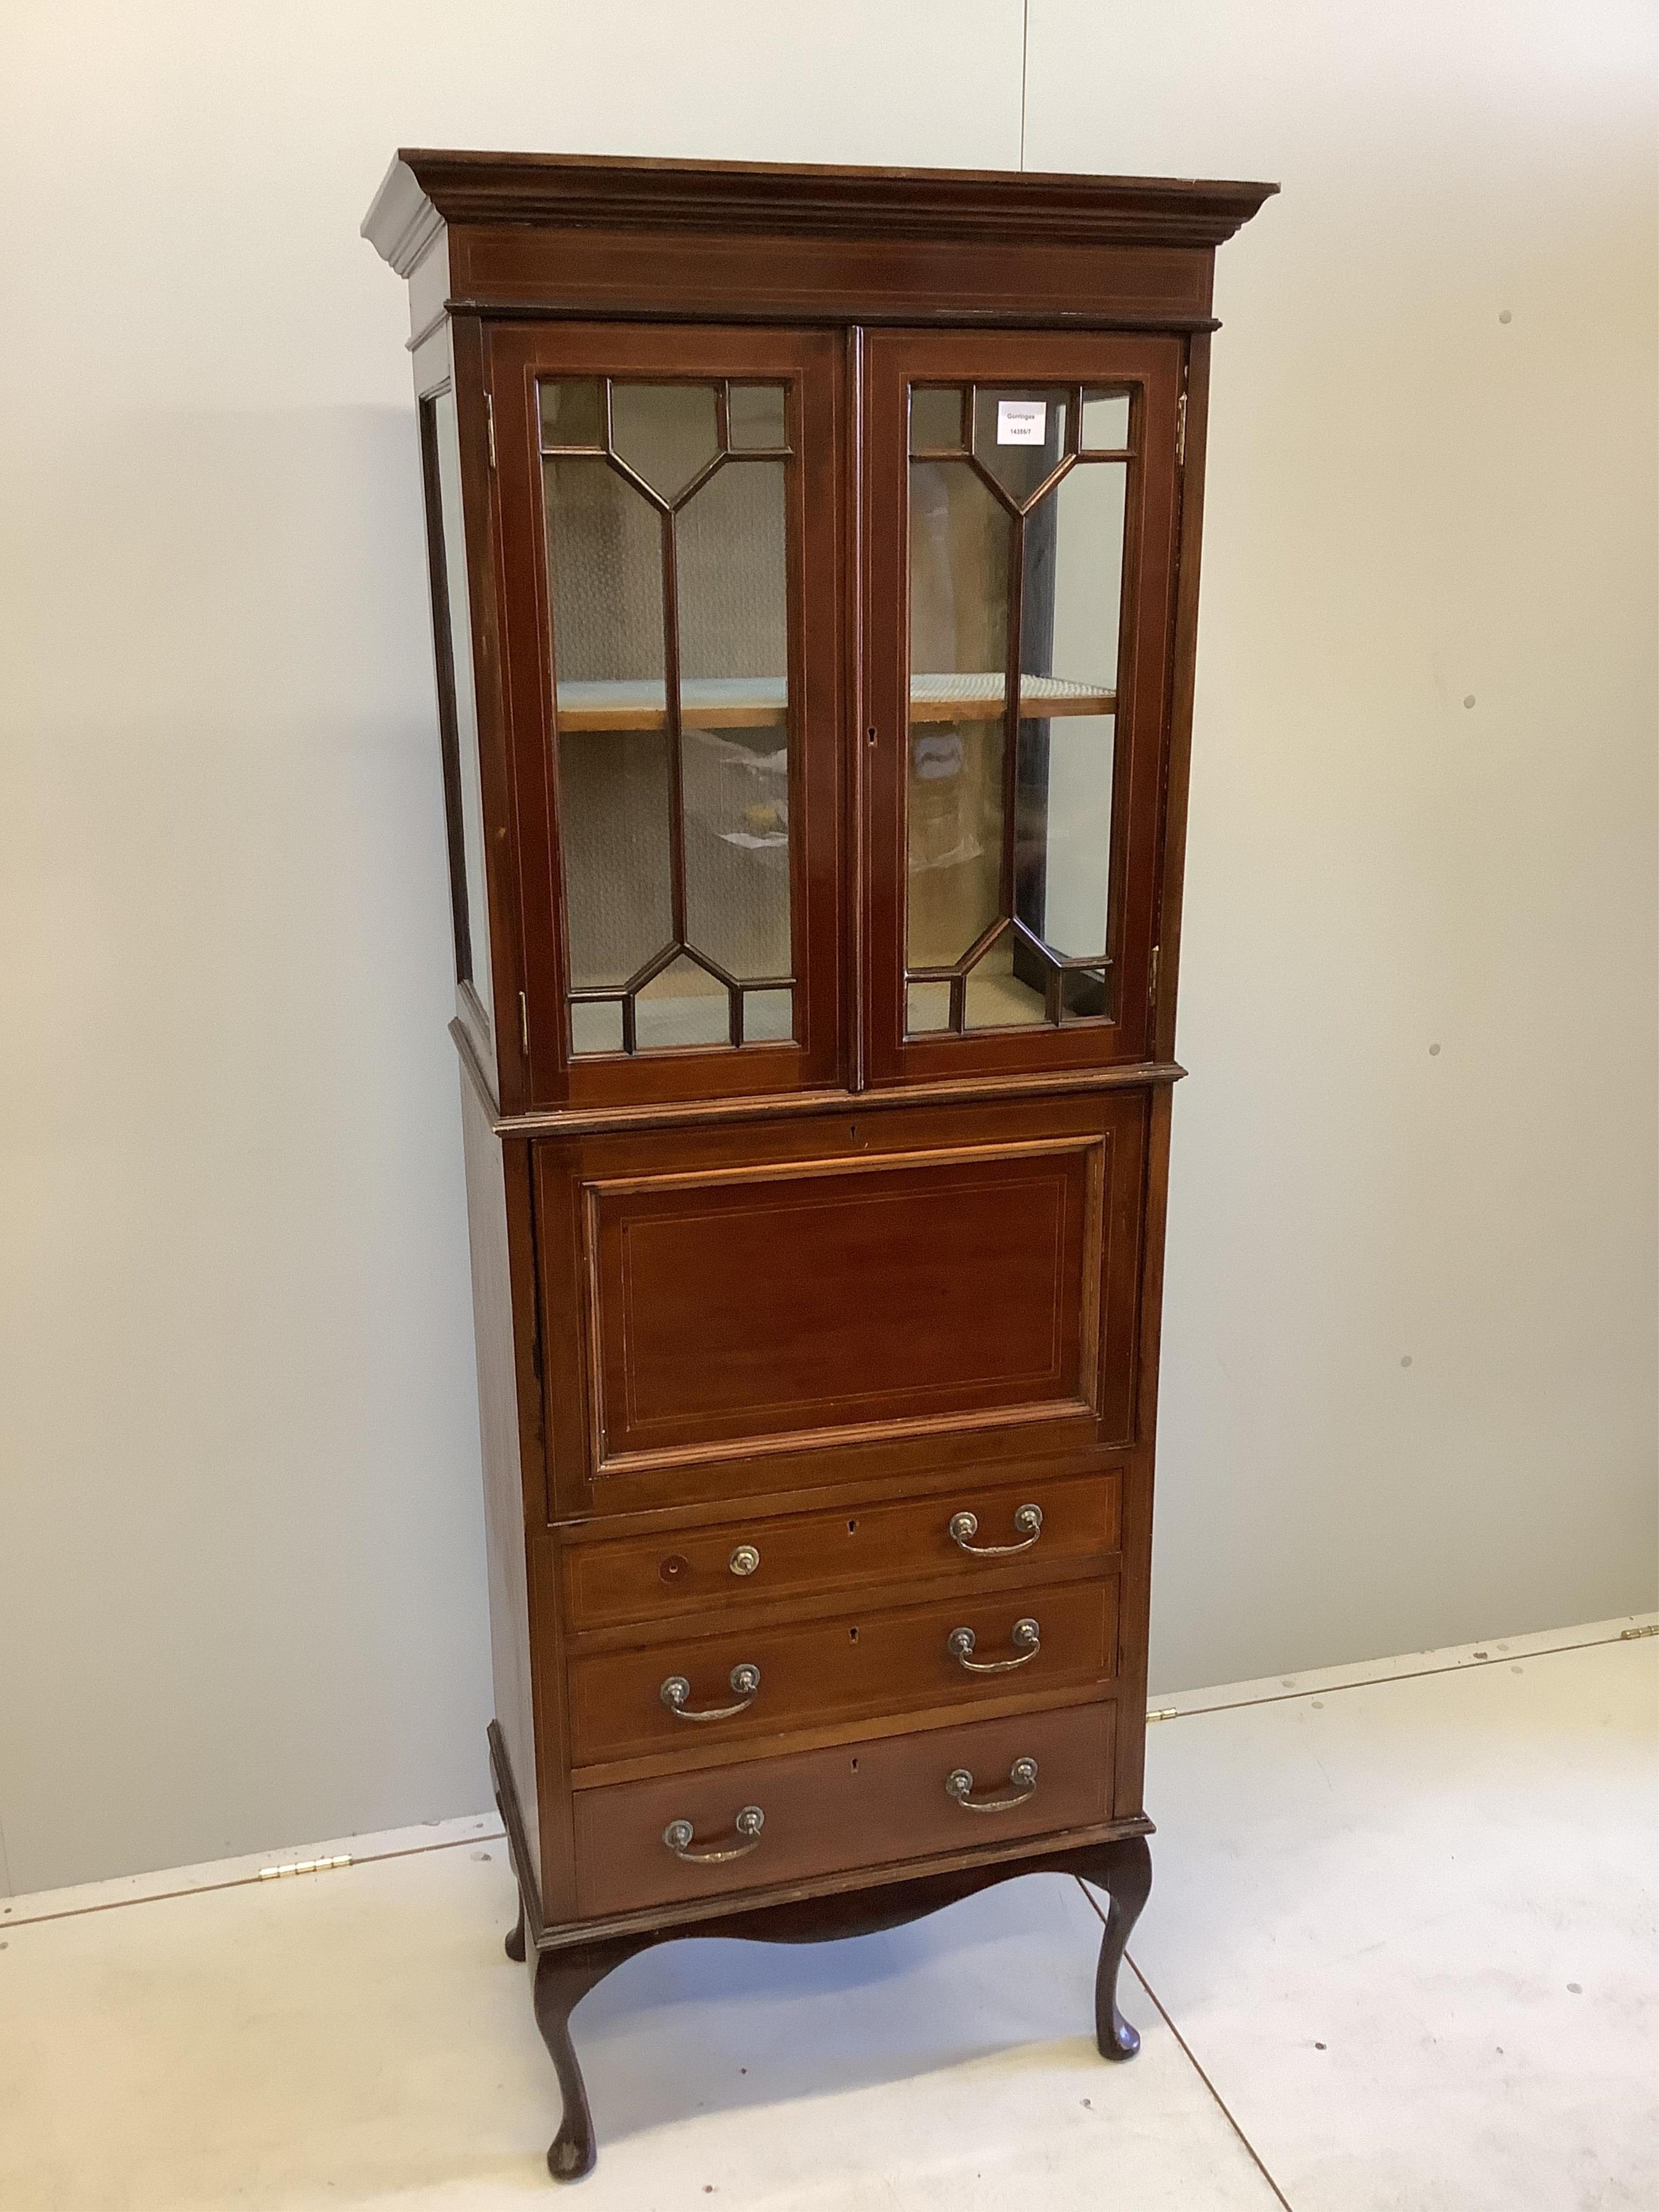 An Edwardian inlaid mahogany bureau cabinet, width 68cm, depth 42cm, height 179cm